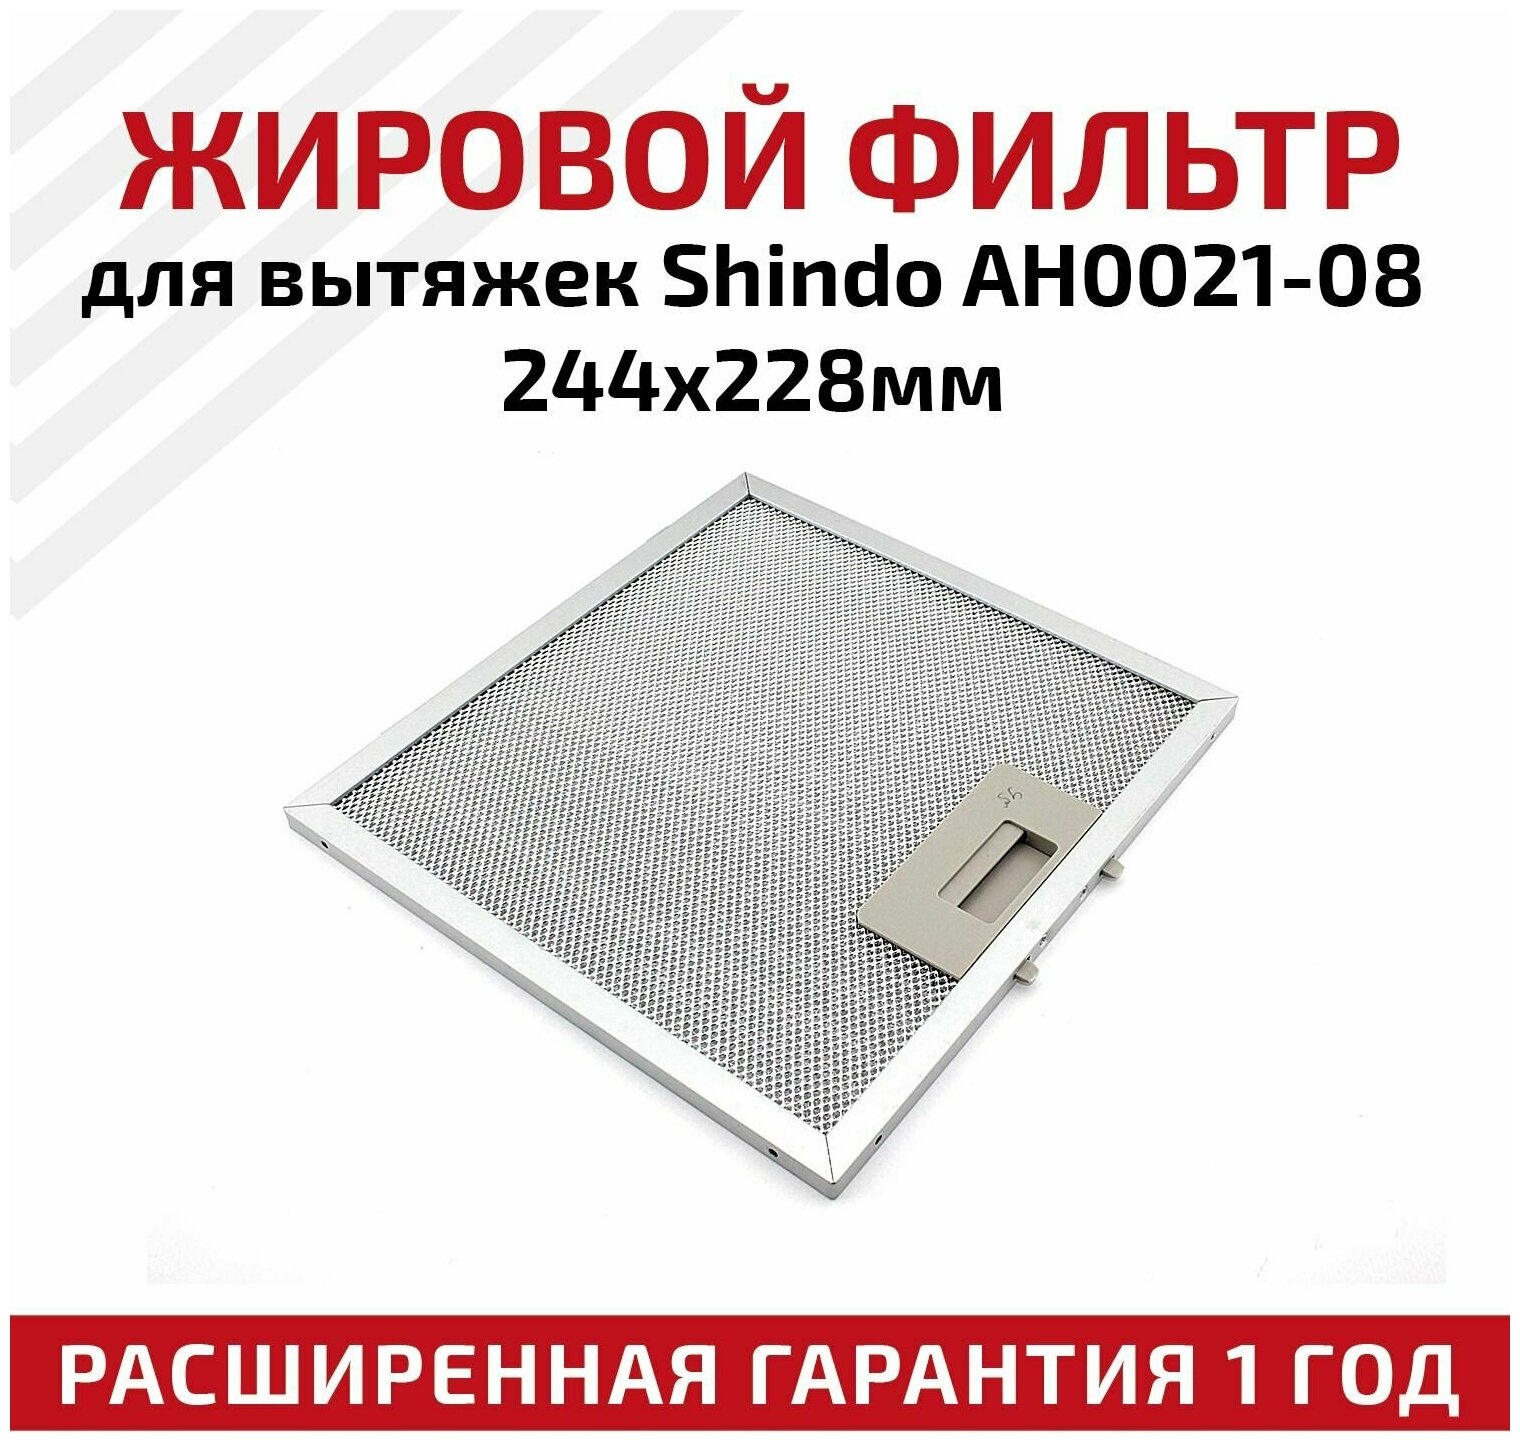 Жировой фильтр (кассета) алюминиевый (металлический) рамочный AH0021-08 для вытяжек Shindo, многоразовый, 244х228мм - фотография № 1